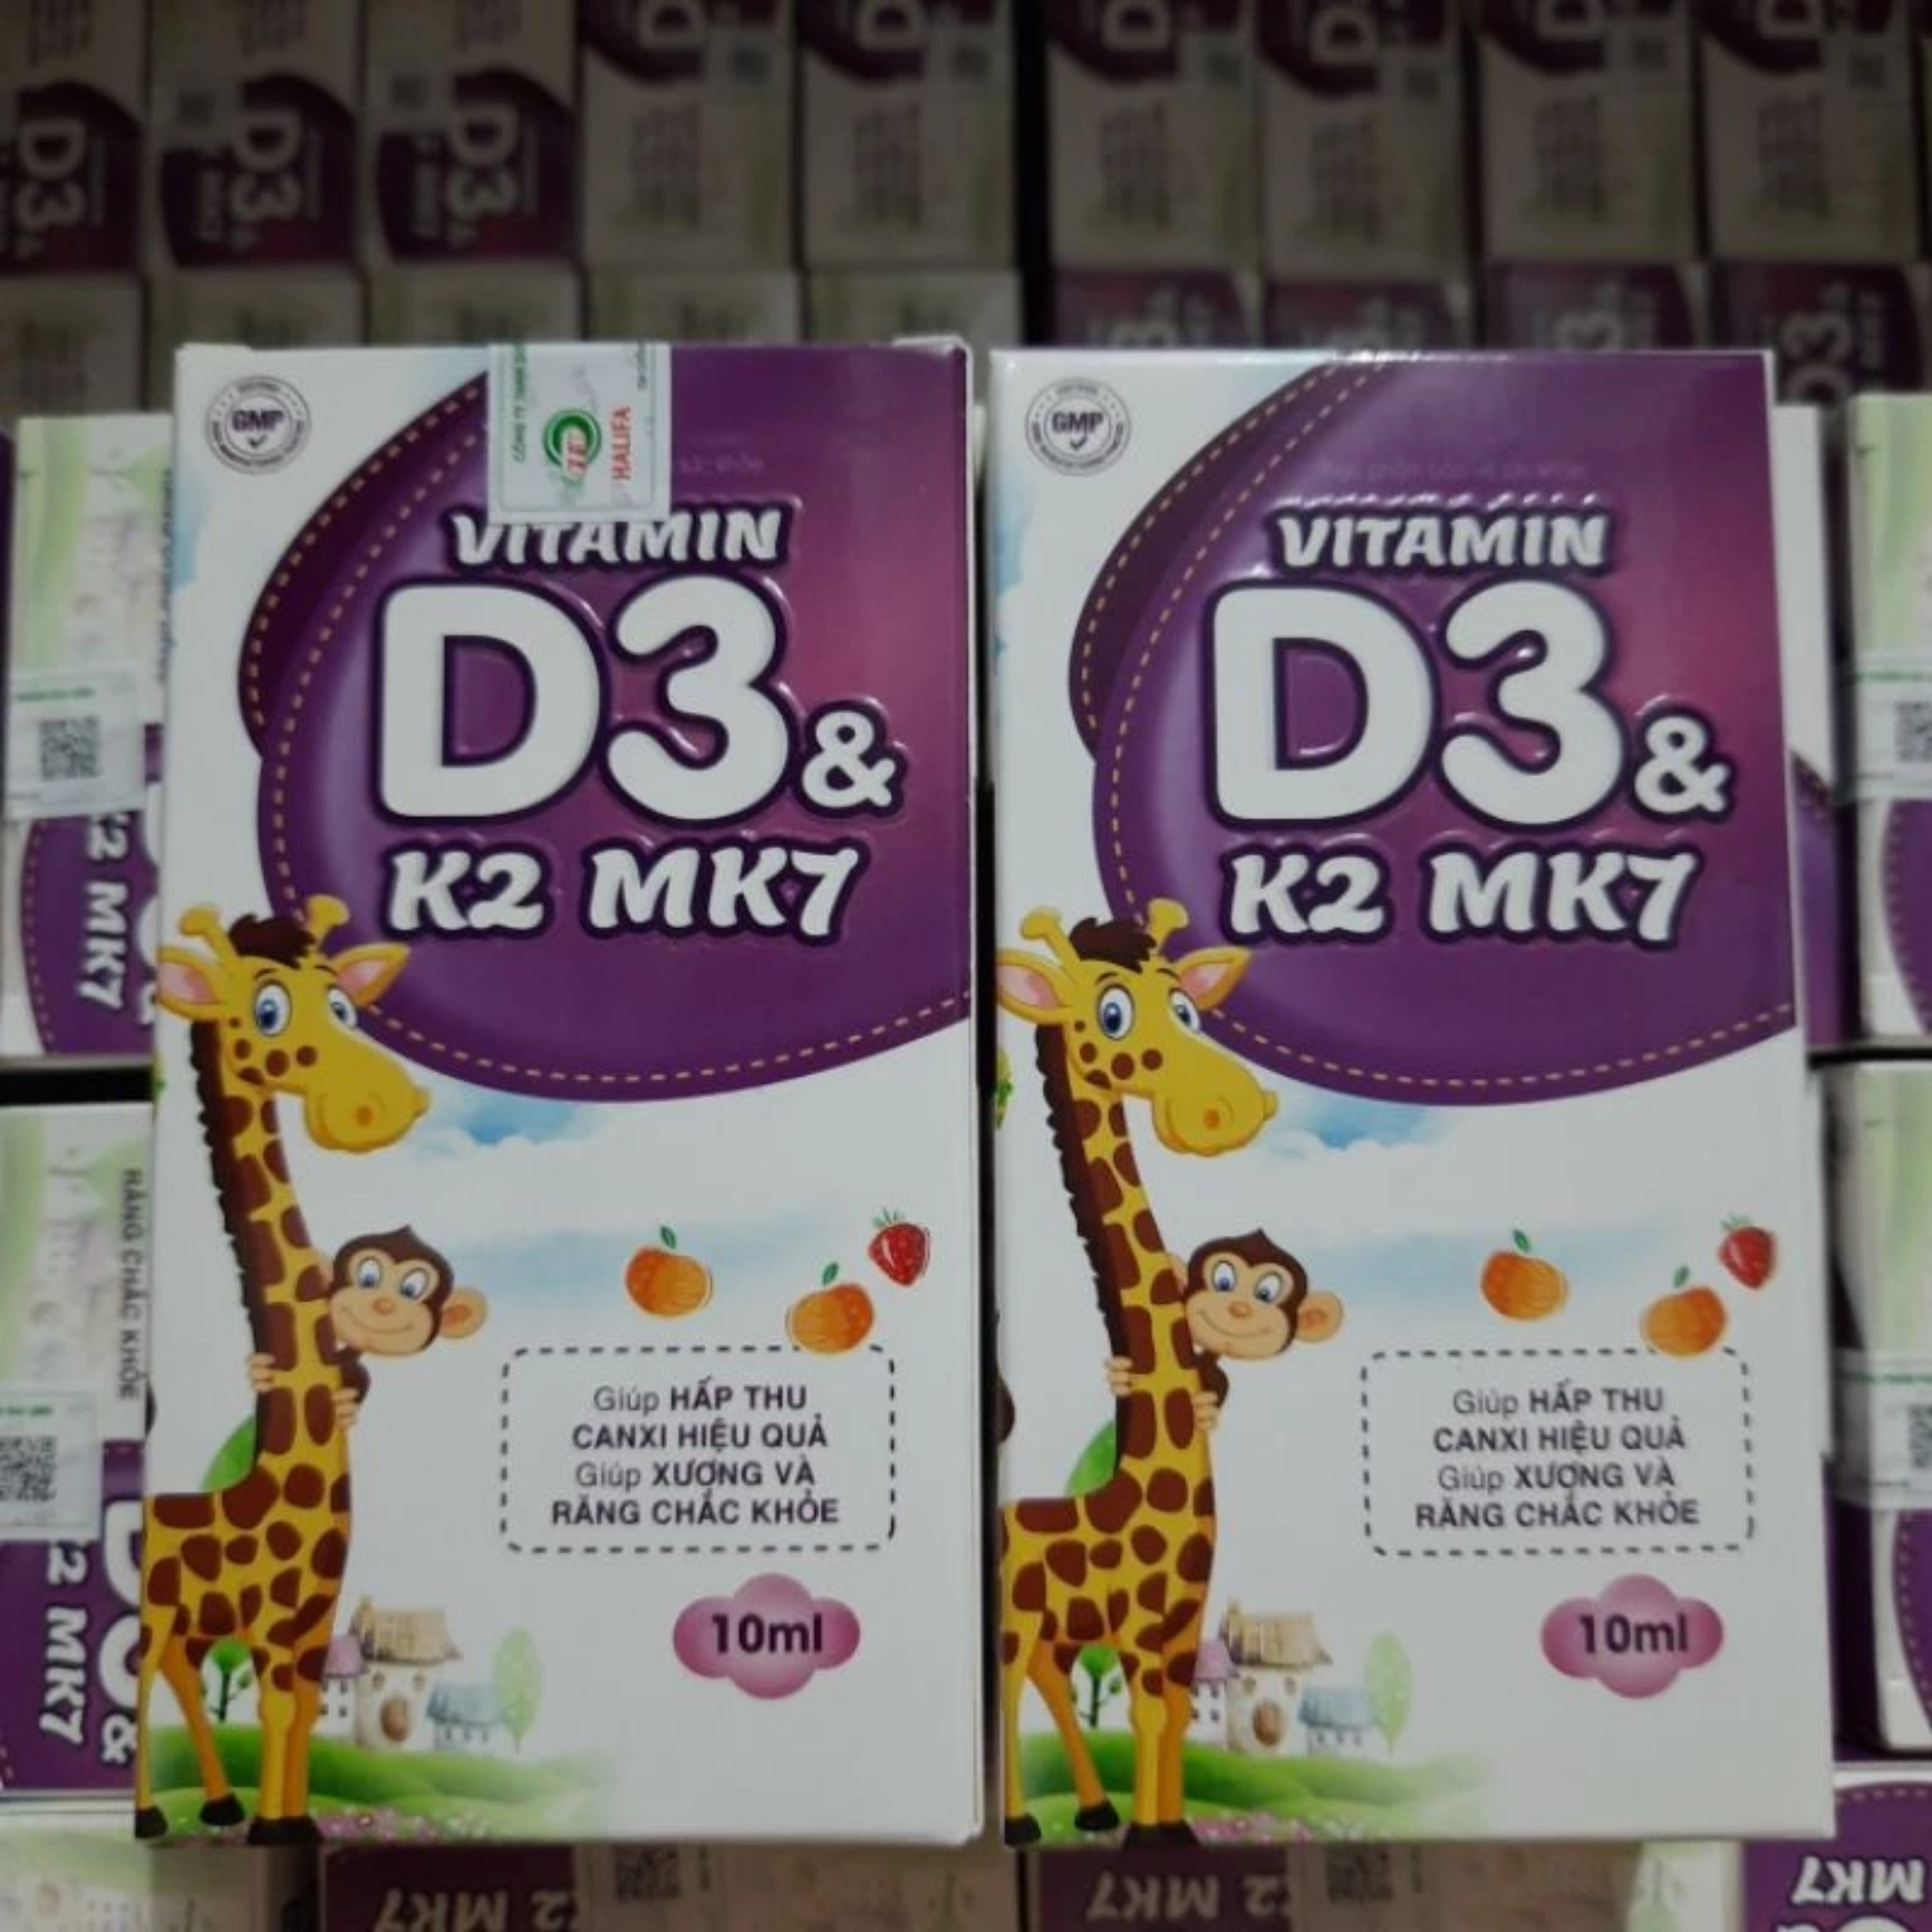 vitamin d3 k2 mk7 nhỏ giọt hỗ trợ tăng cường hấp thu canxi,giúp xương răng chắc khỏe